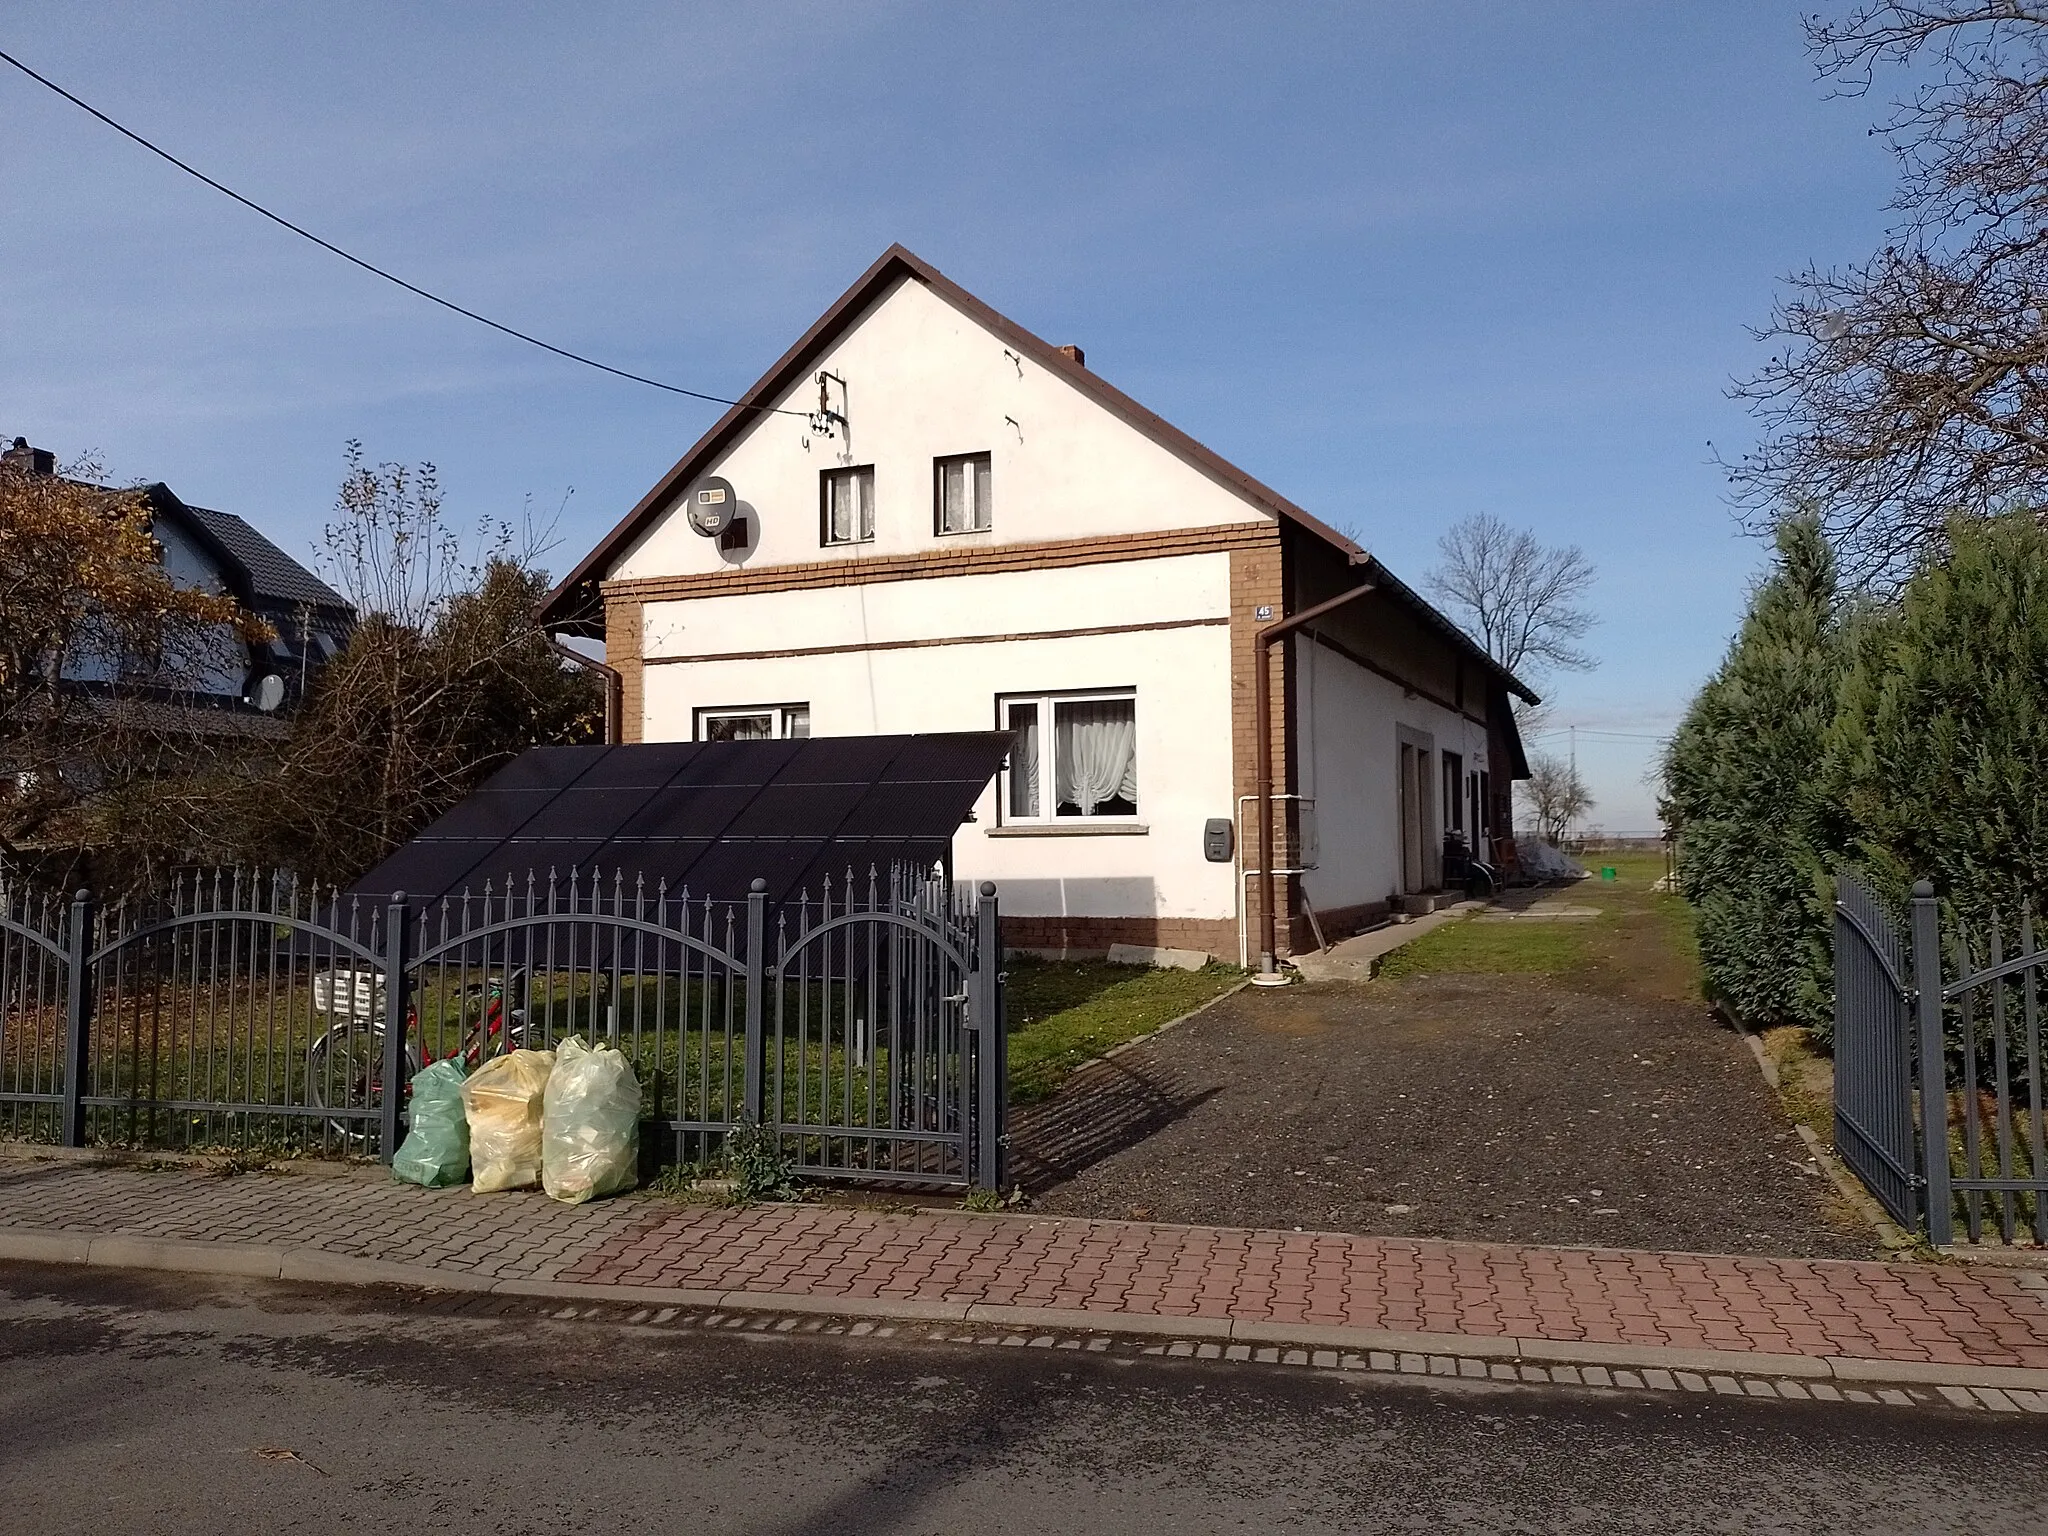 Photo showing: 45 Główna Street in Rudyszwałd, Upper Silesia, Poland